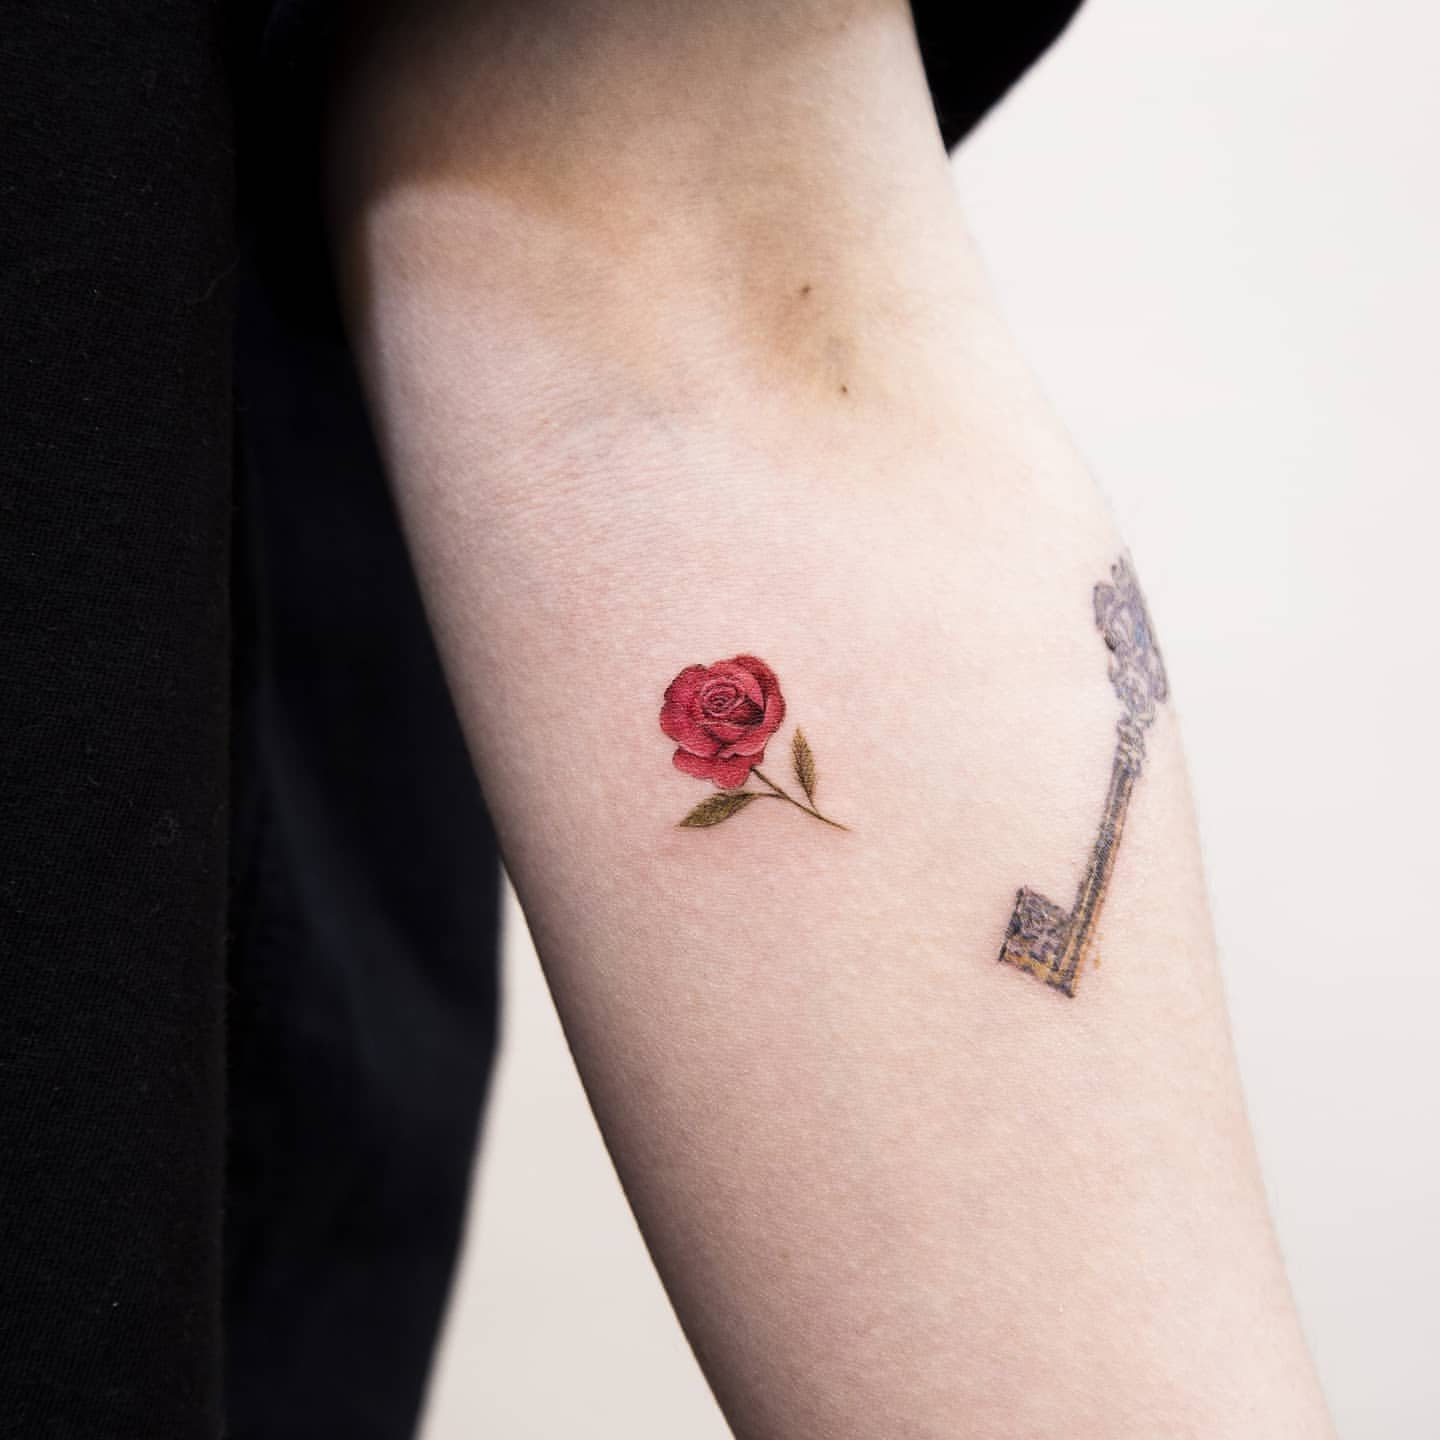 Small Flower Tattoo Ideas 6